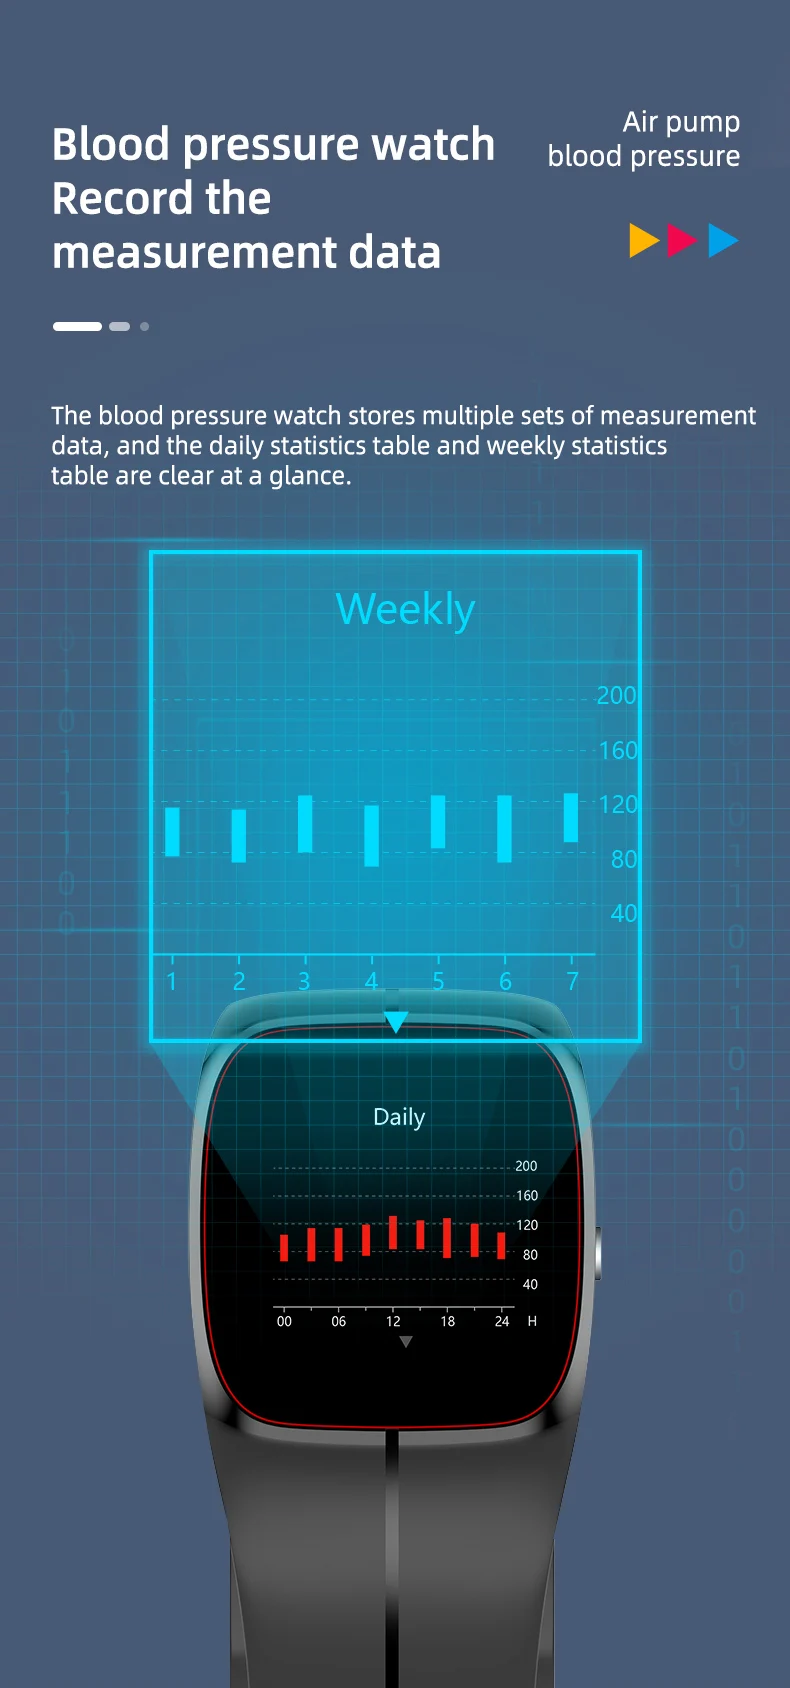 P20 Smart Watch Air Pump Blood Pressure (8).jpg